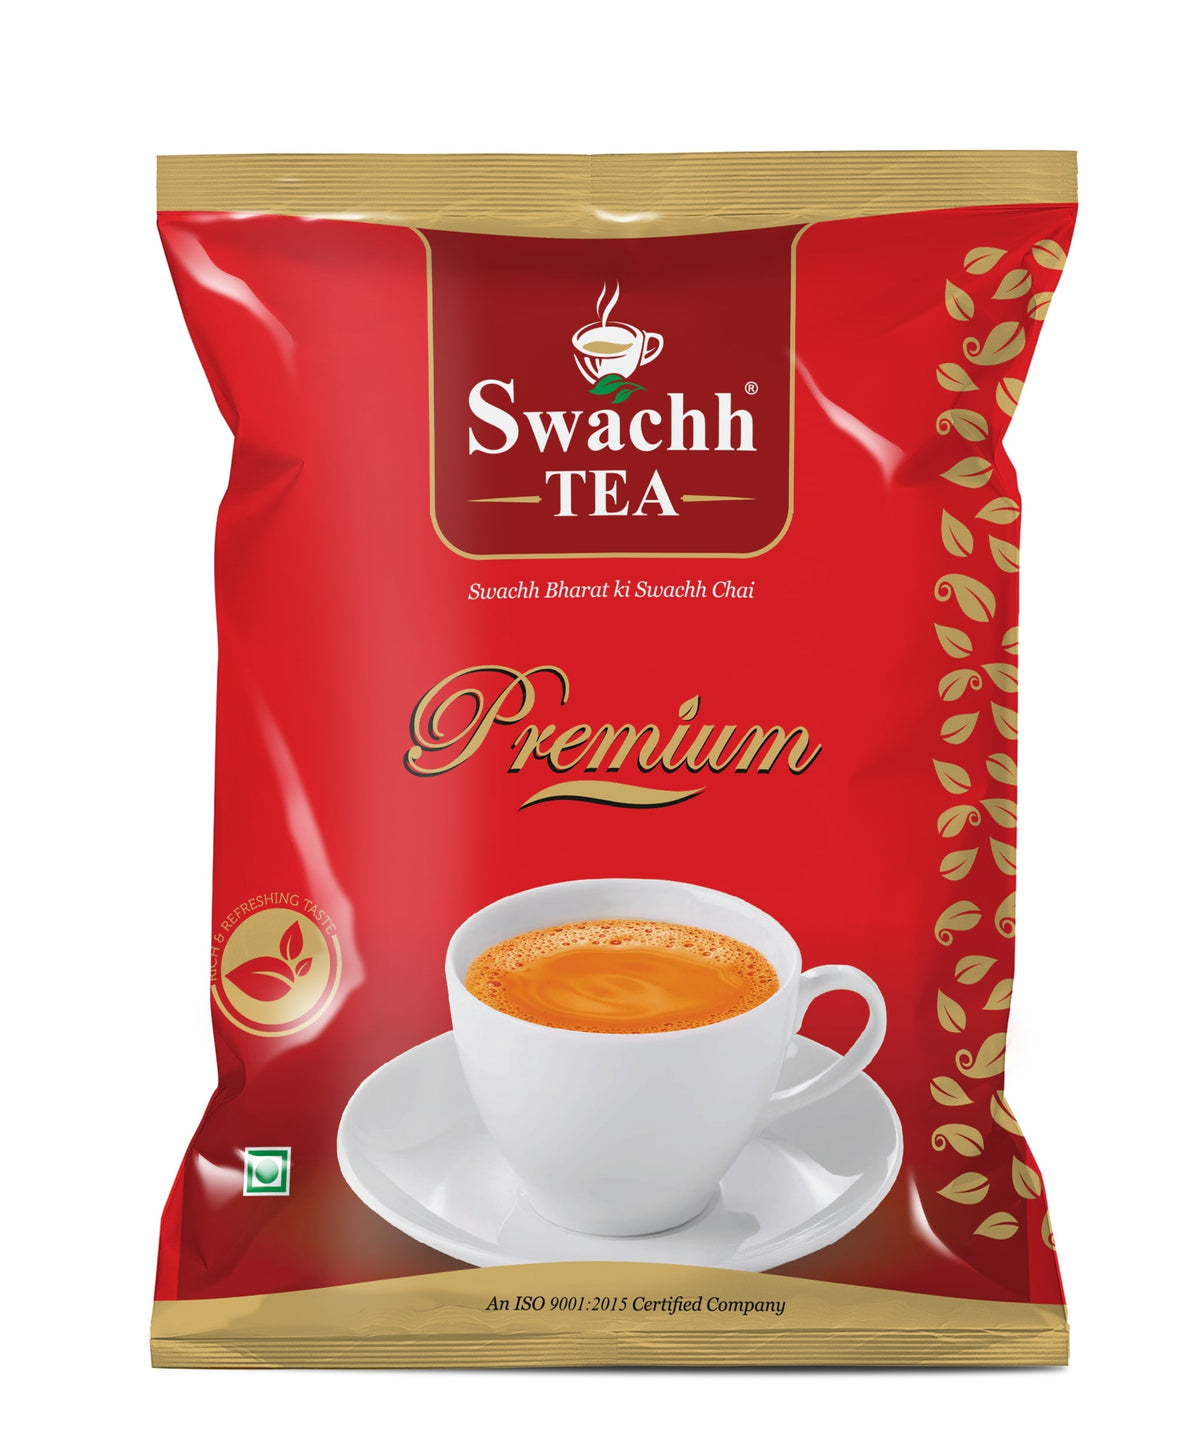 Swachh tea premium